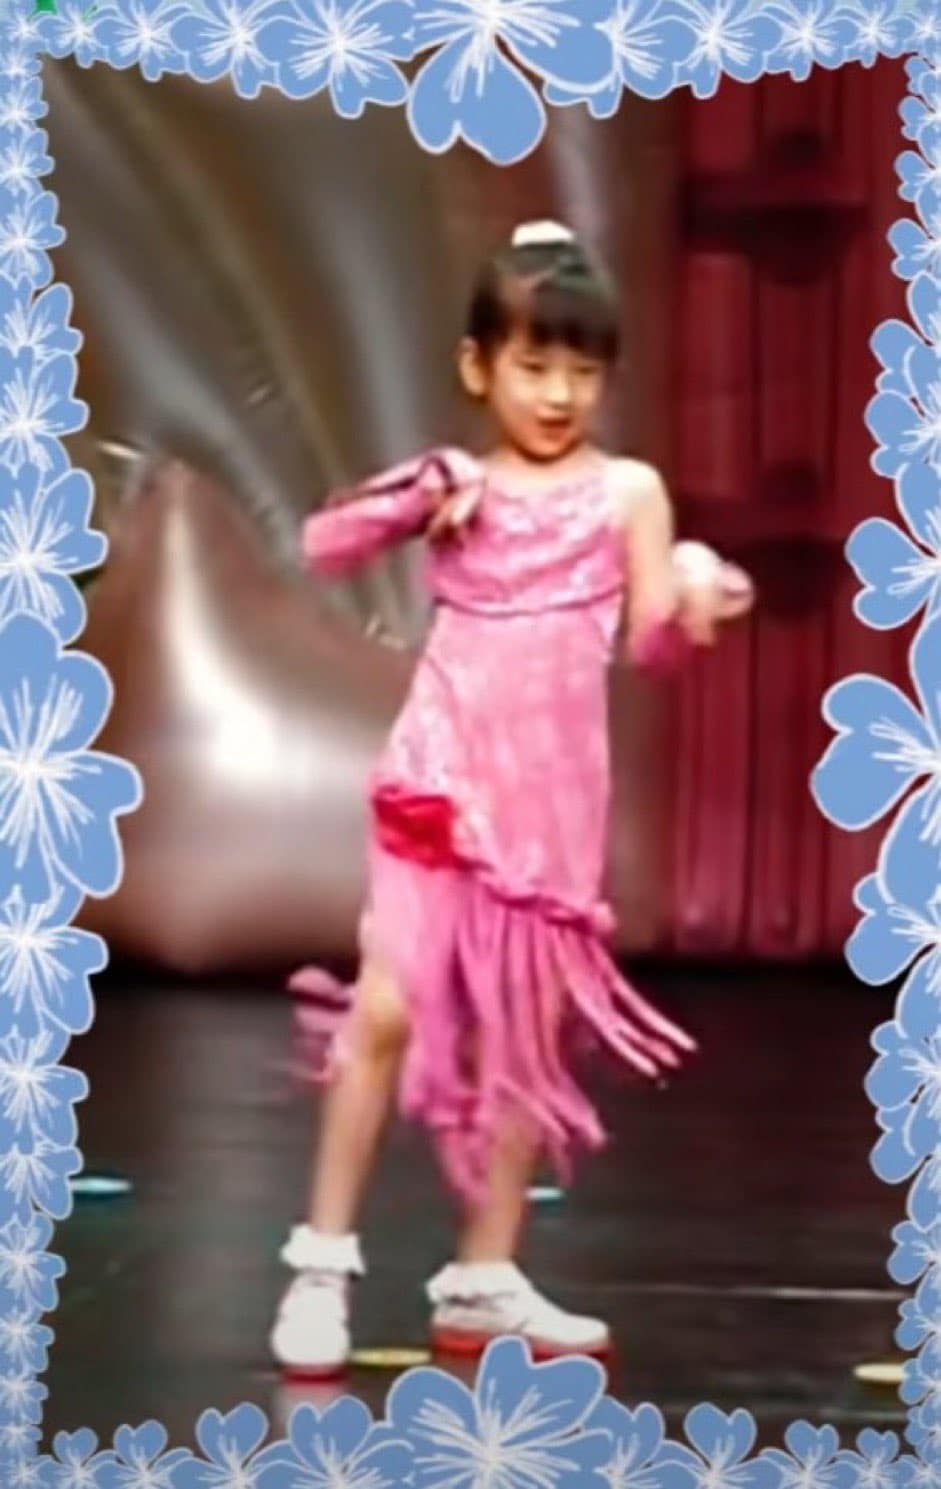 [theqoo] Видео с маленькой Юджин из IVE, танцующей под песню Wonder Girls «Nobody», вызвало умиление у фанатов